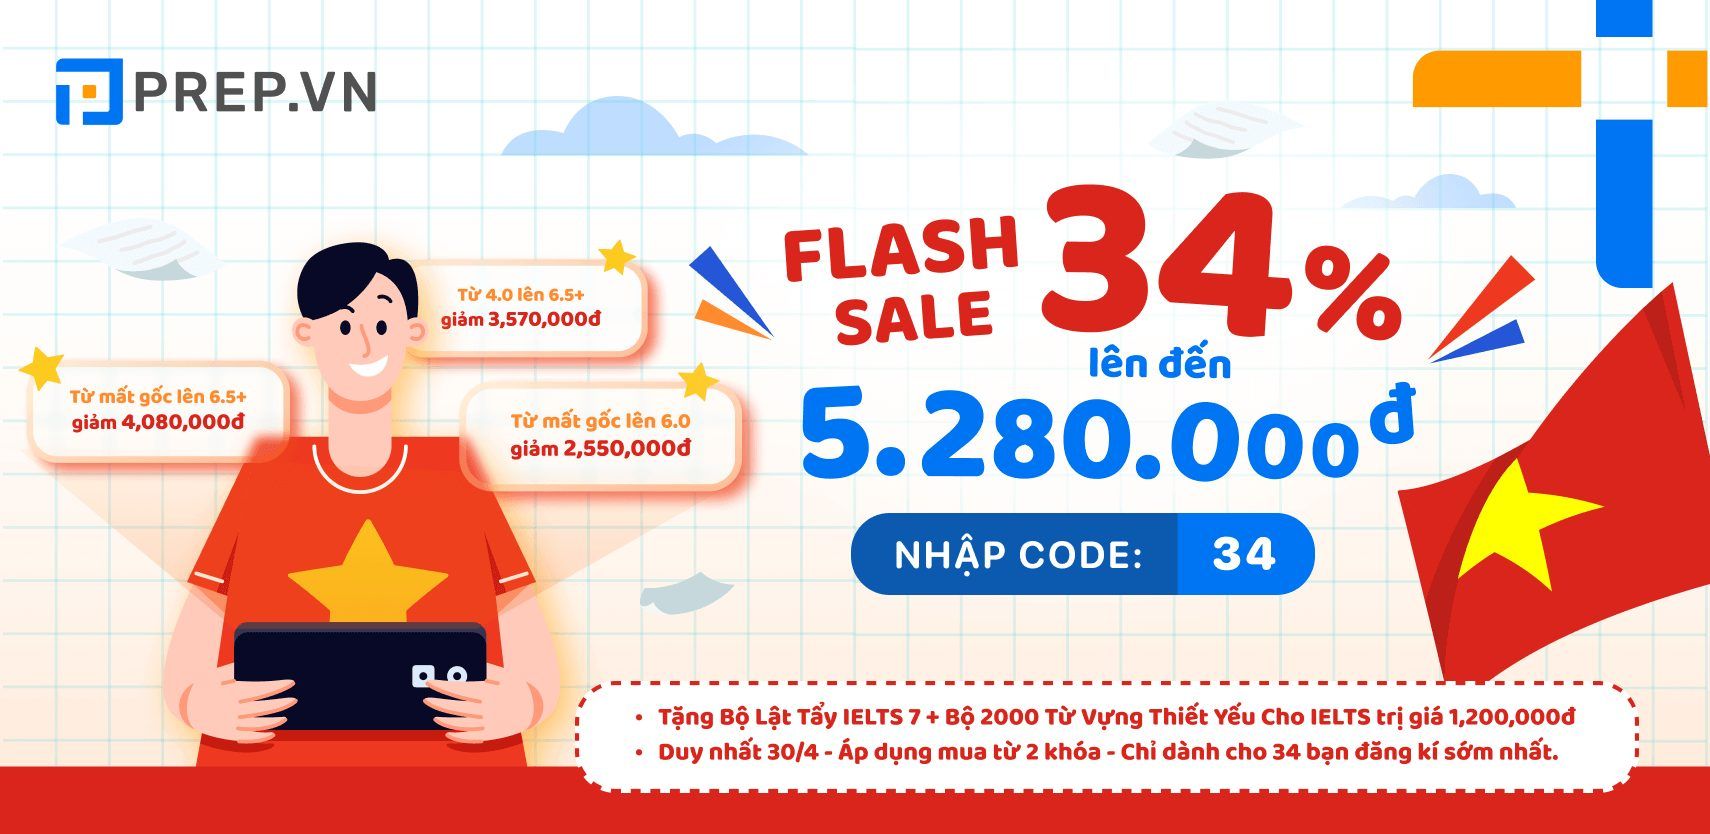 FLASH SALE 34% lên đến 5.280.000đ với Code 34 - Chỉ dành cho 34 bạn đầu tiên đăng ký!